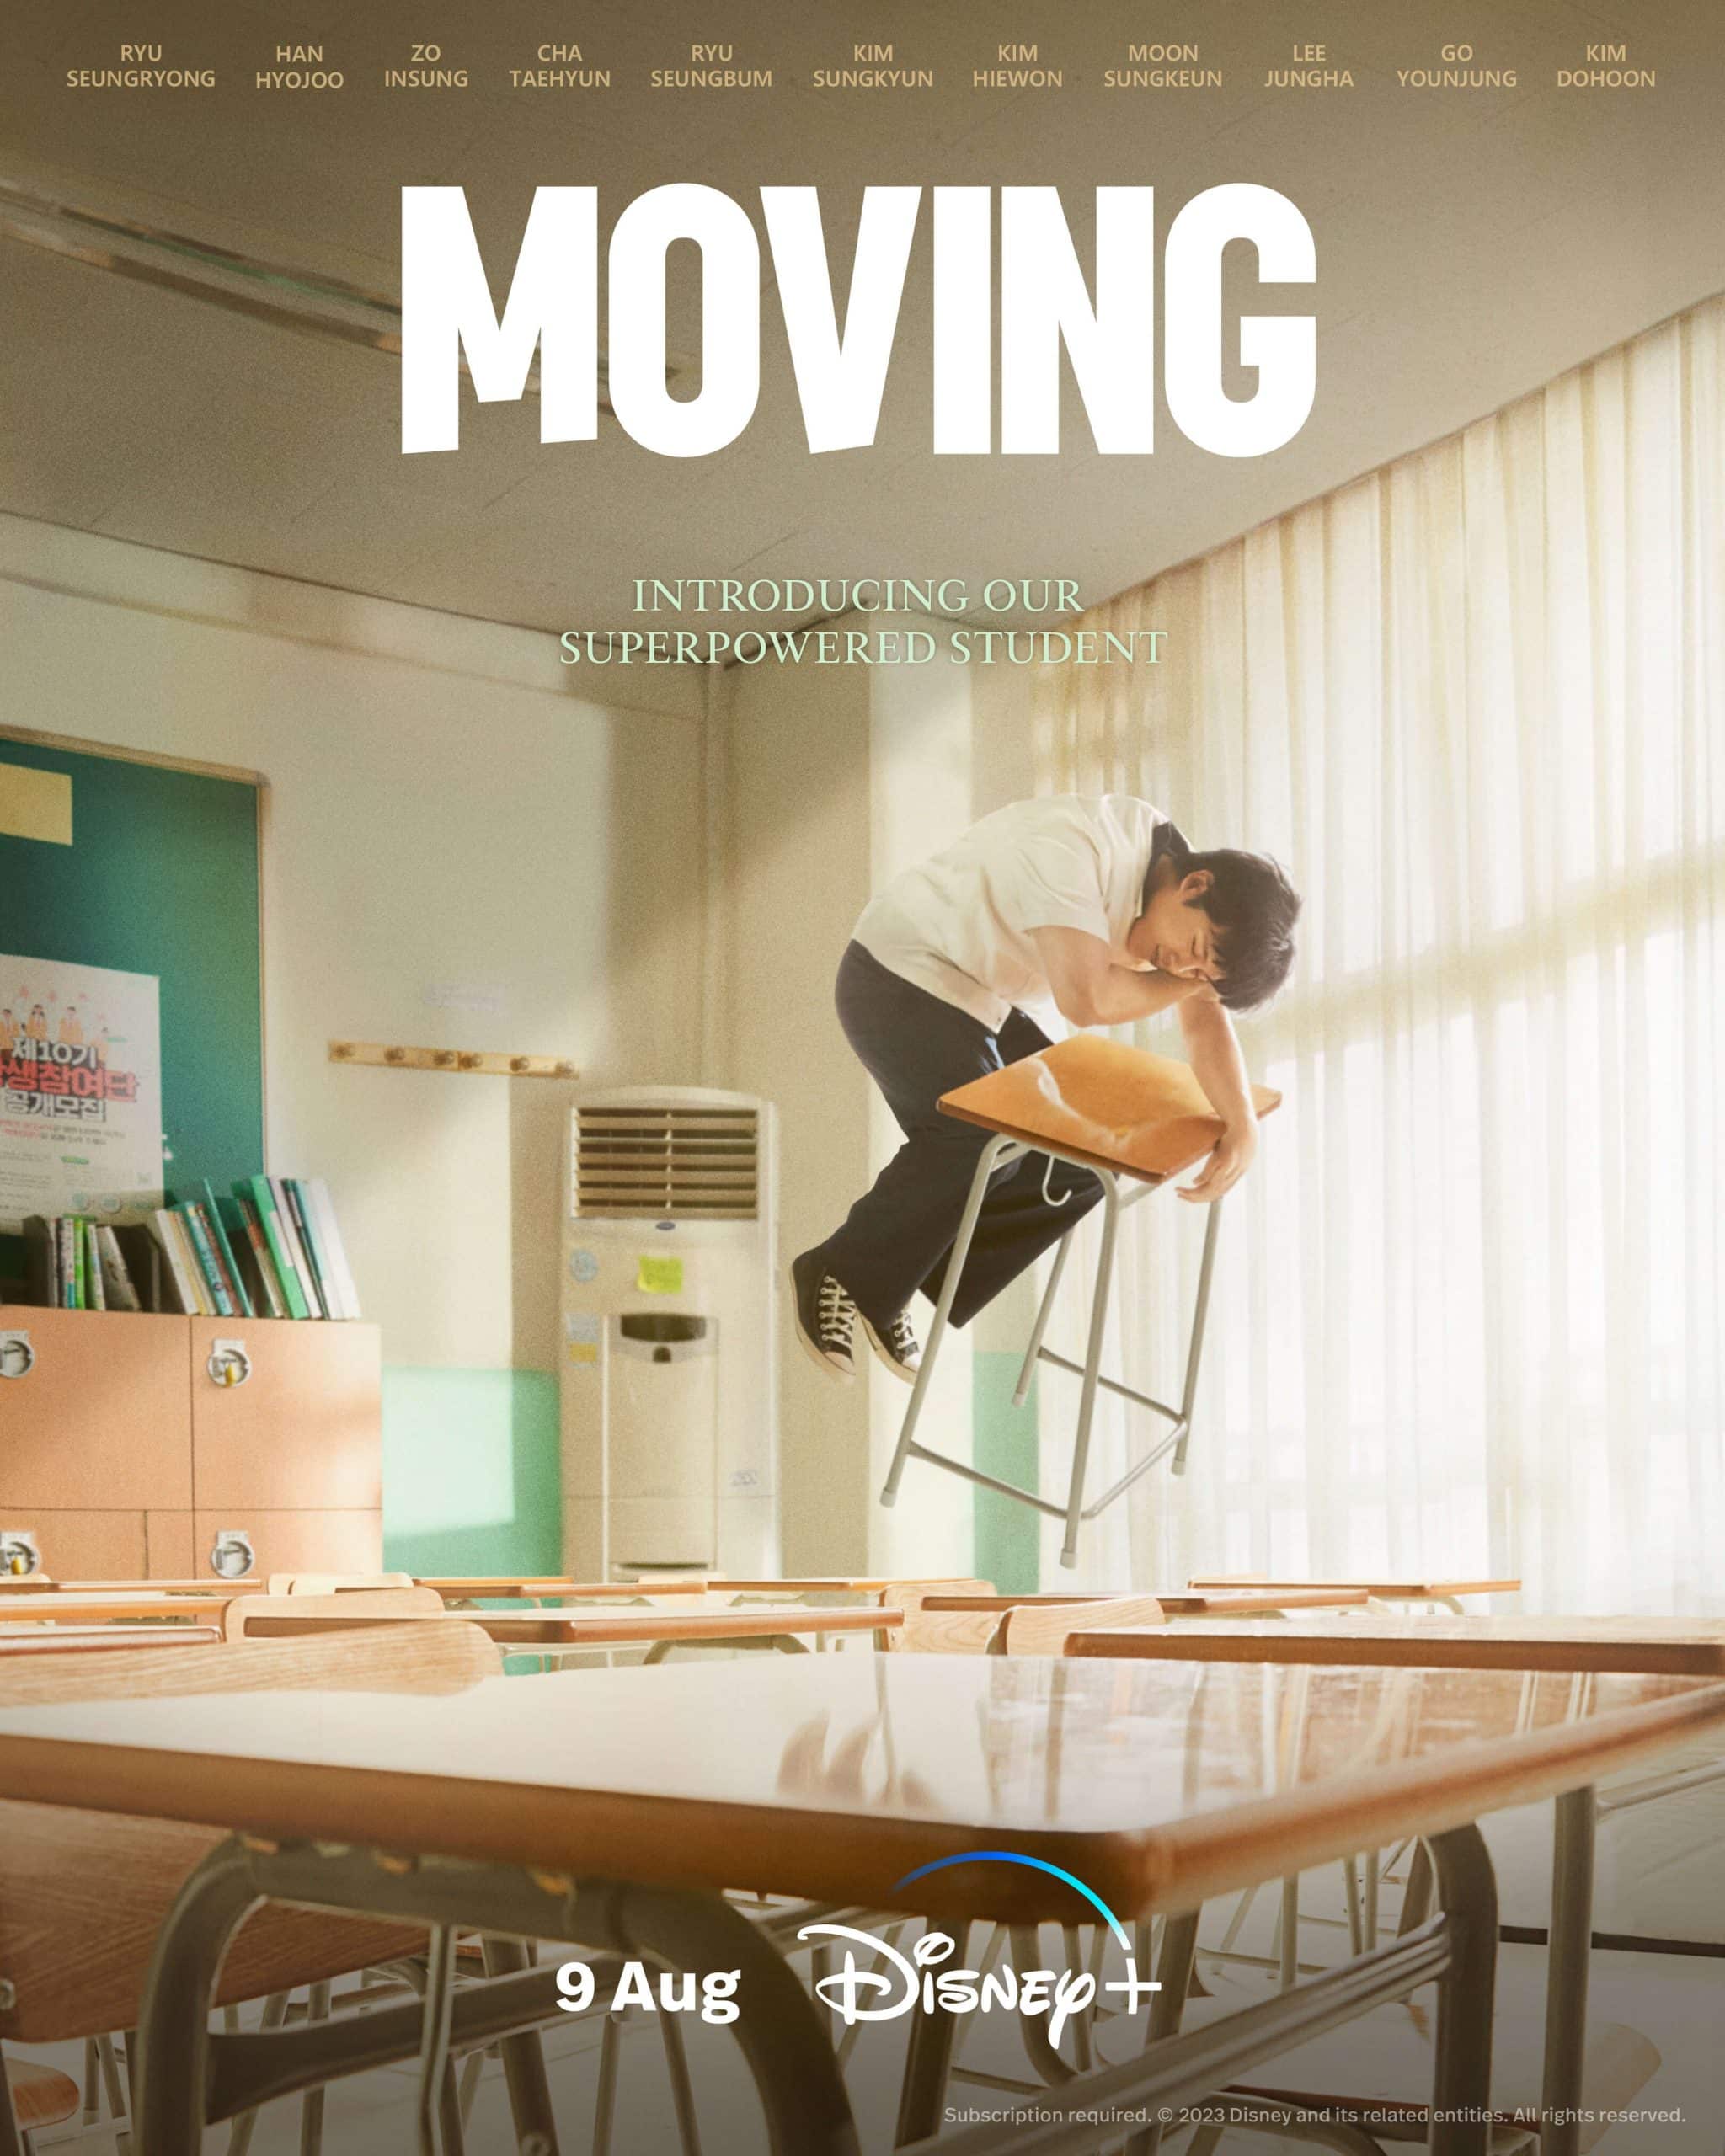 Korean Disney+ Drama “Moving” Teaser Trailer Released What's On